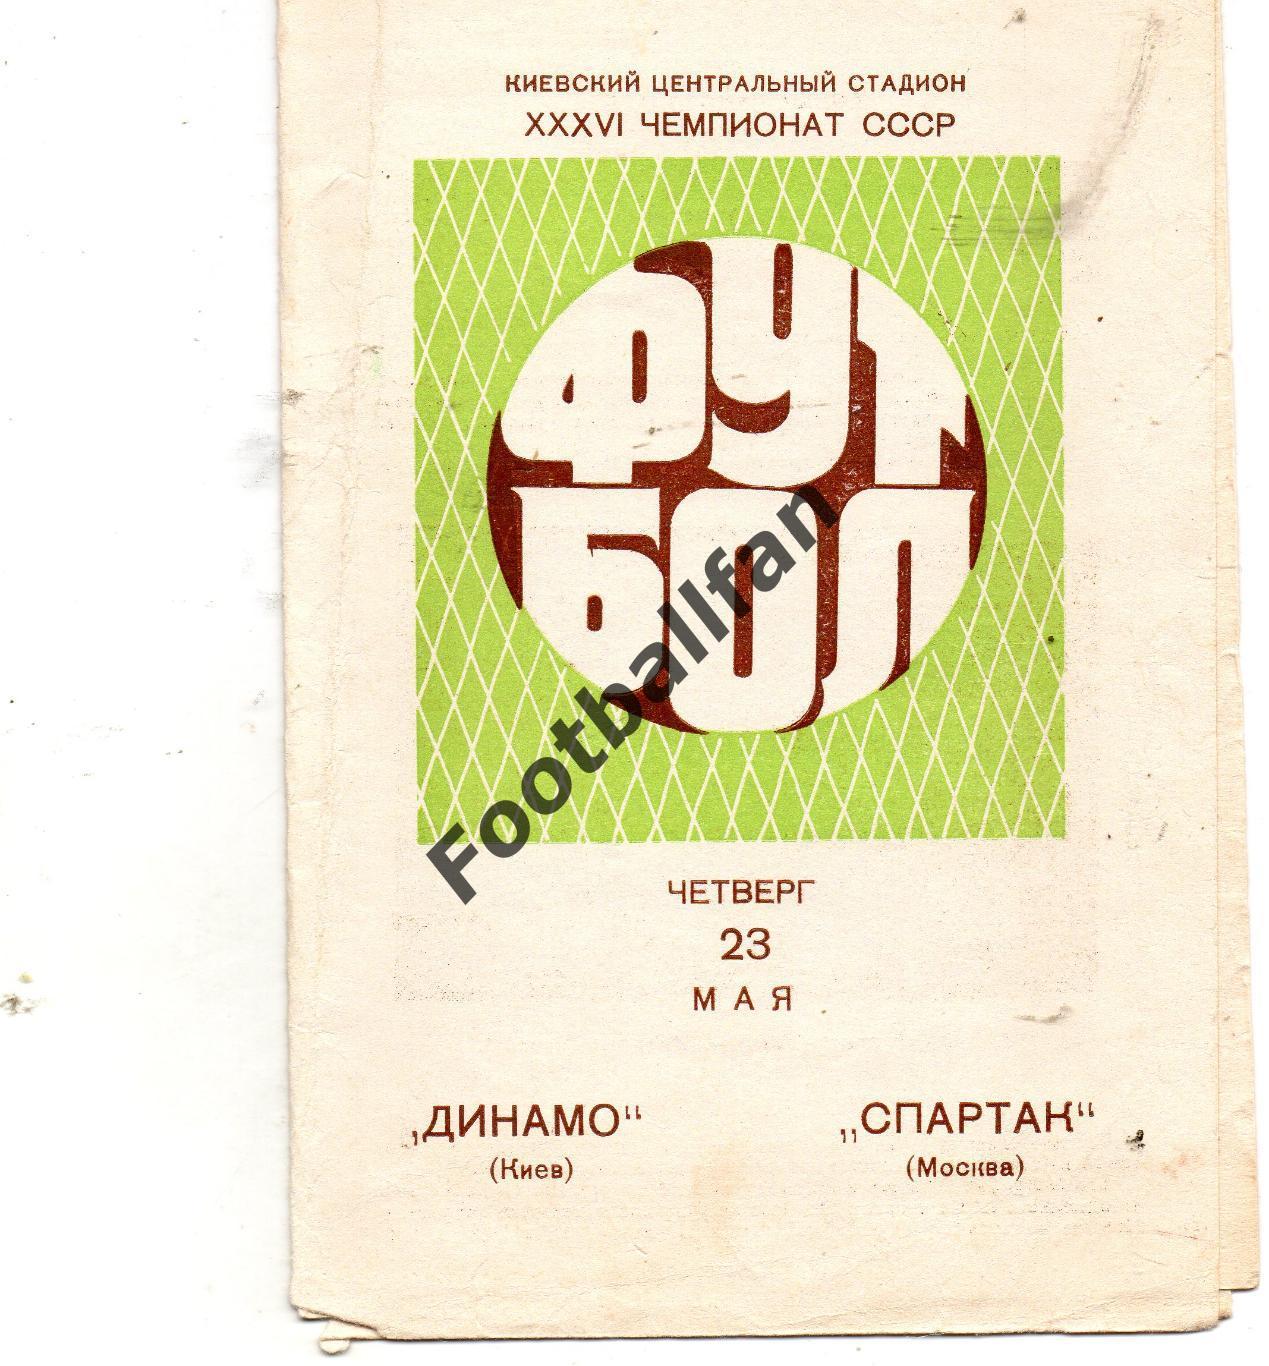 Динамо Киев - Спартак Москва 23.05.1974